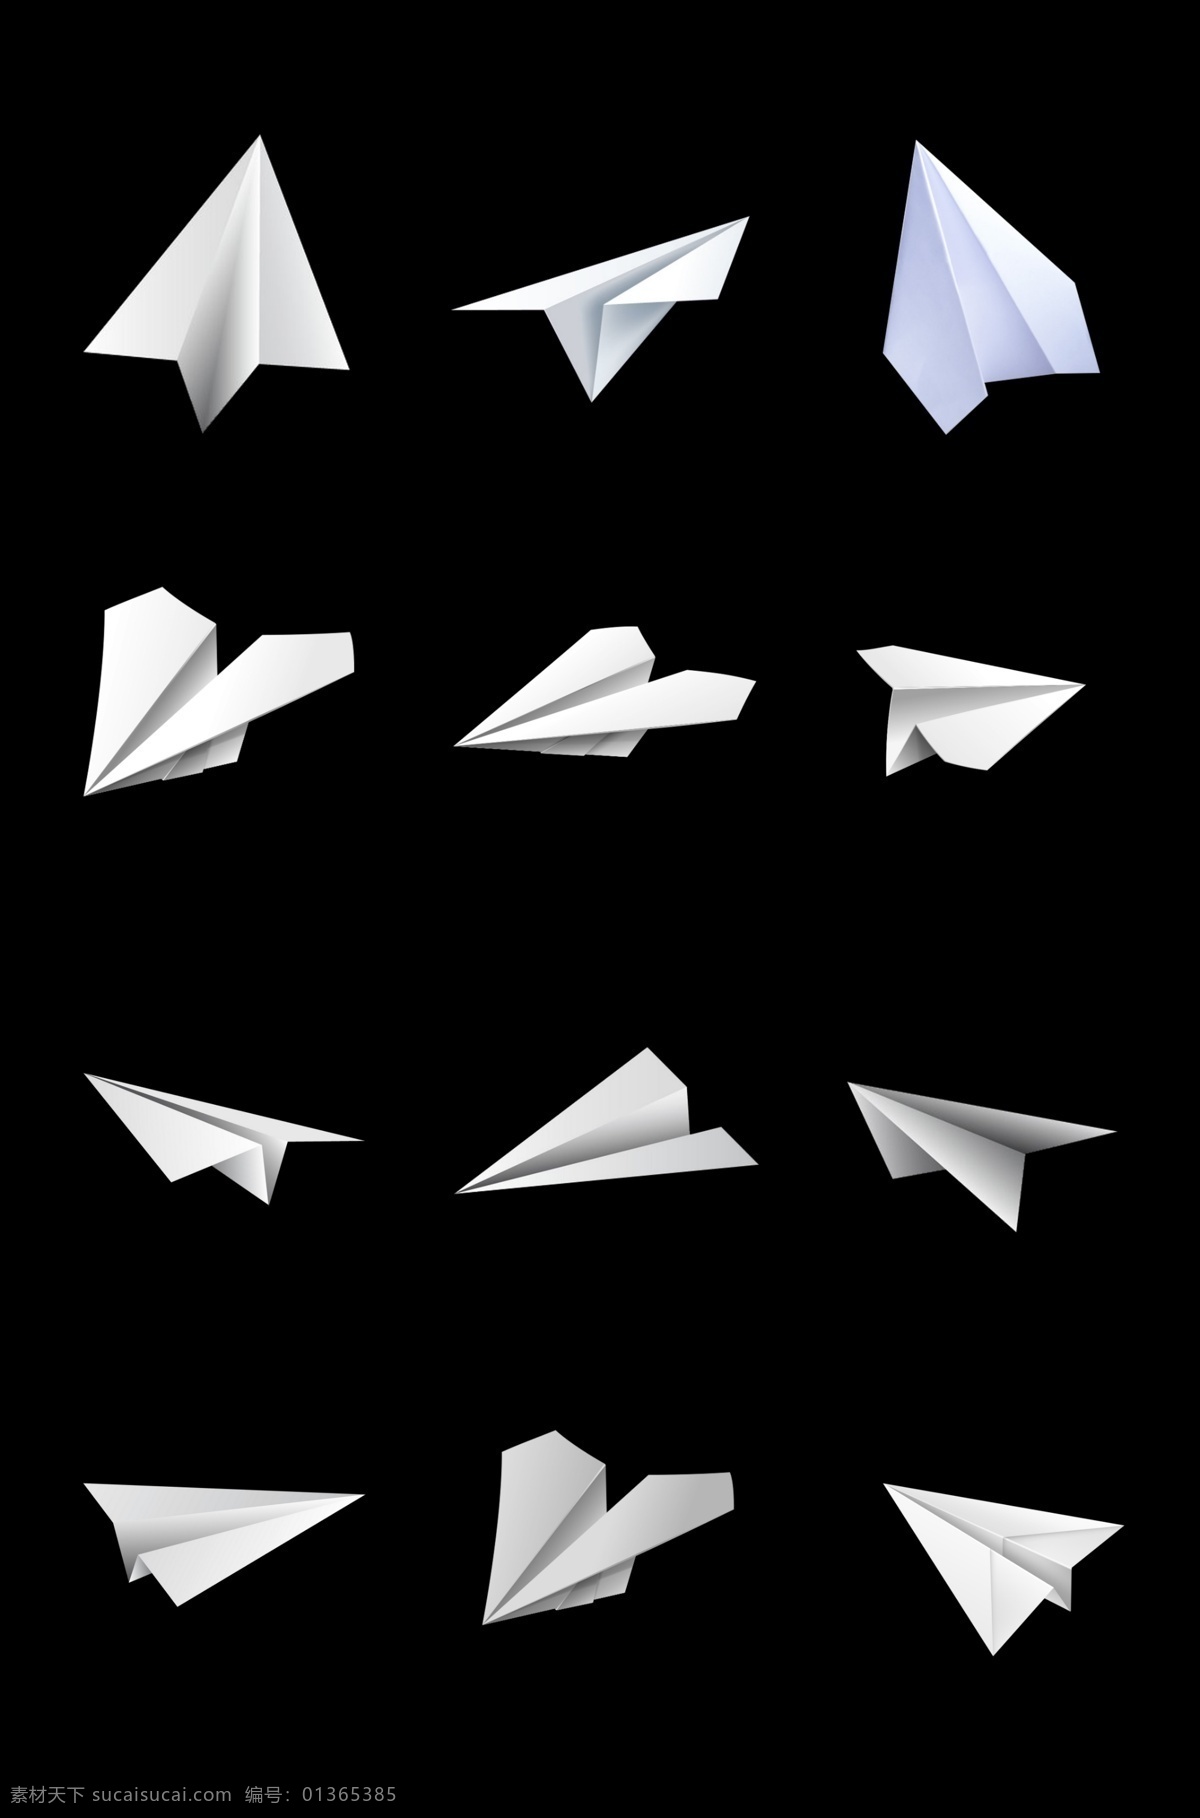 纸飞机图片 纸飞机 飞机 折纸飞机 折纸 矢量纸飞机 纸飞机矢量 折纸飞机矢量 矢量折纸飞机 飞机矢量 矢量飞机